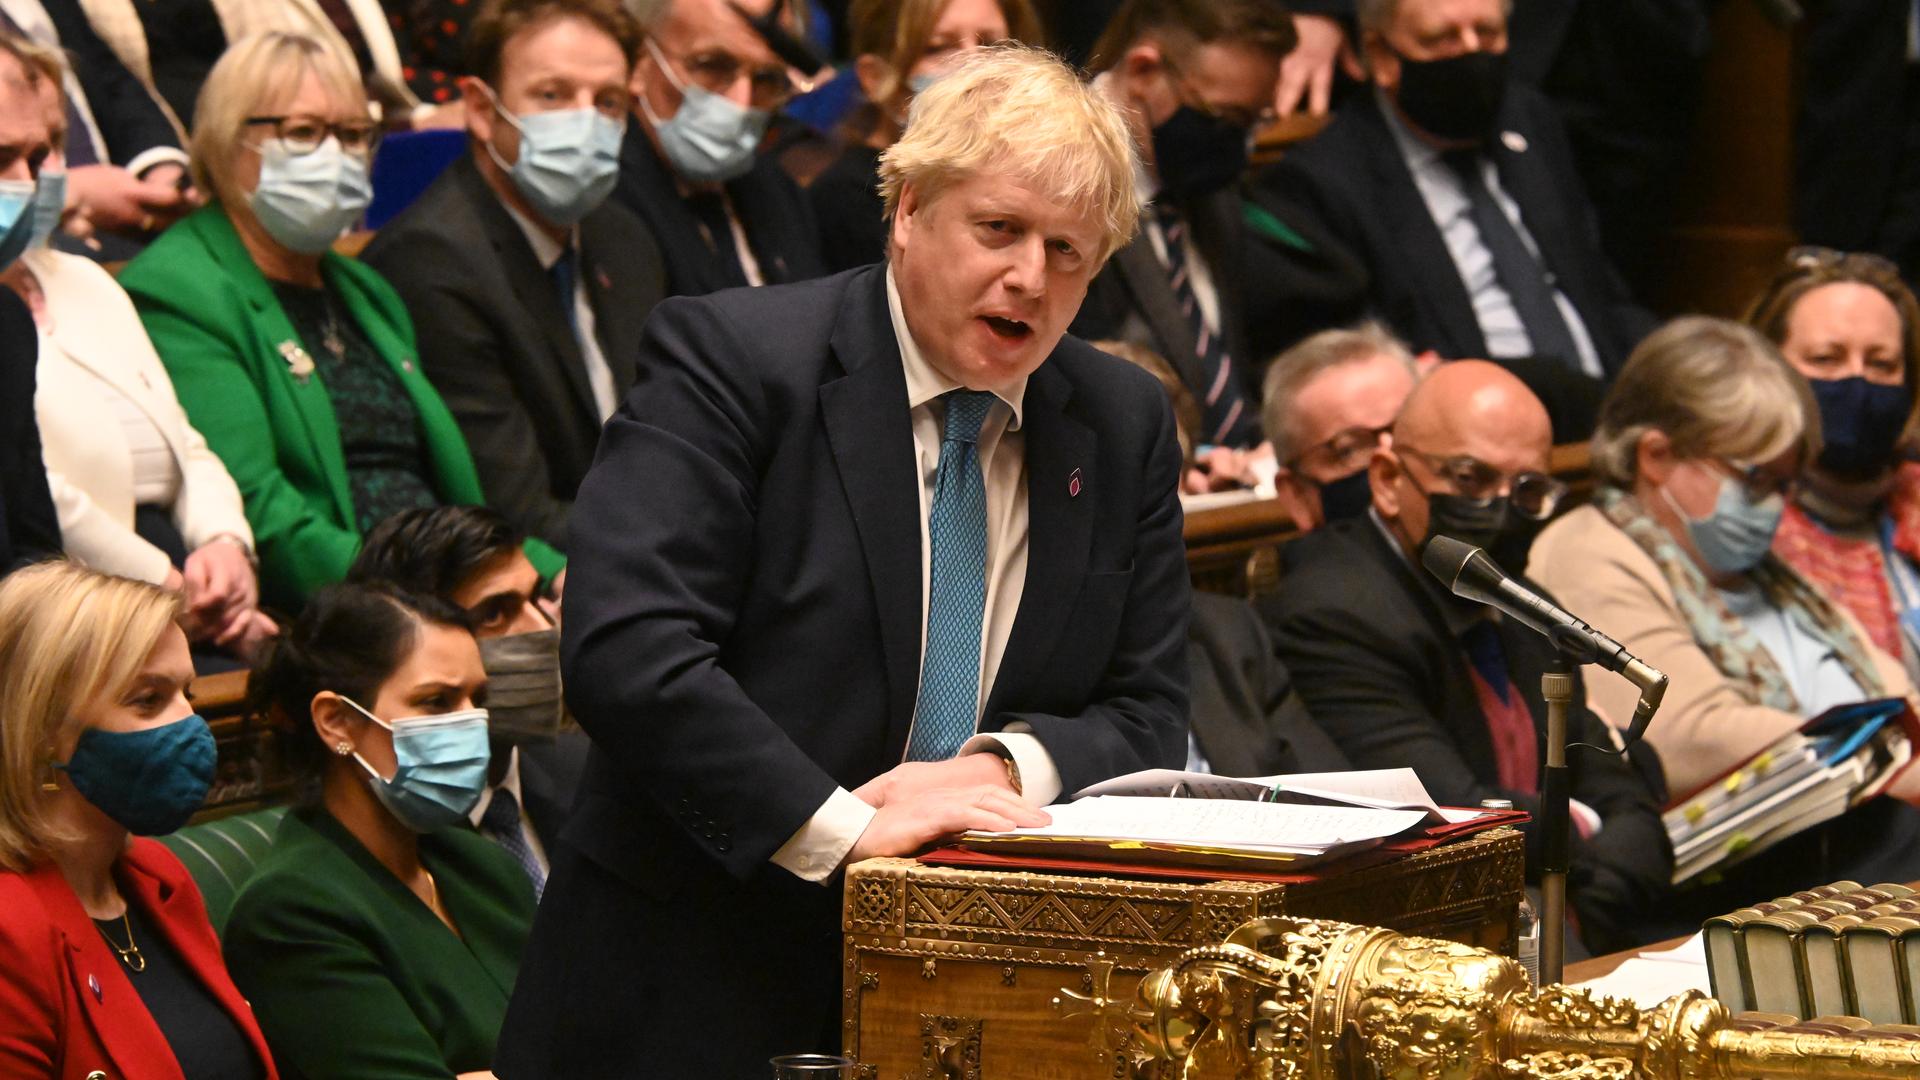 Affäre um Lockdown-Partys - Boris Johnson will nicht zurücktreten